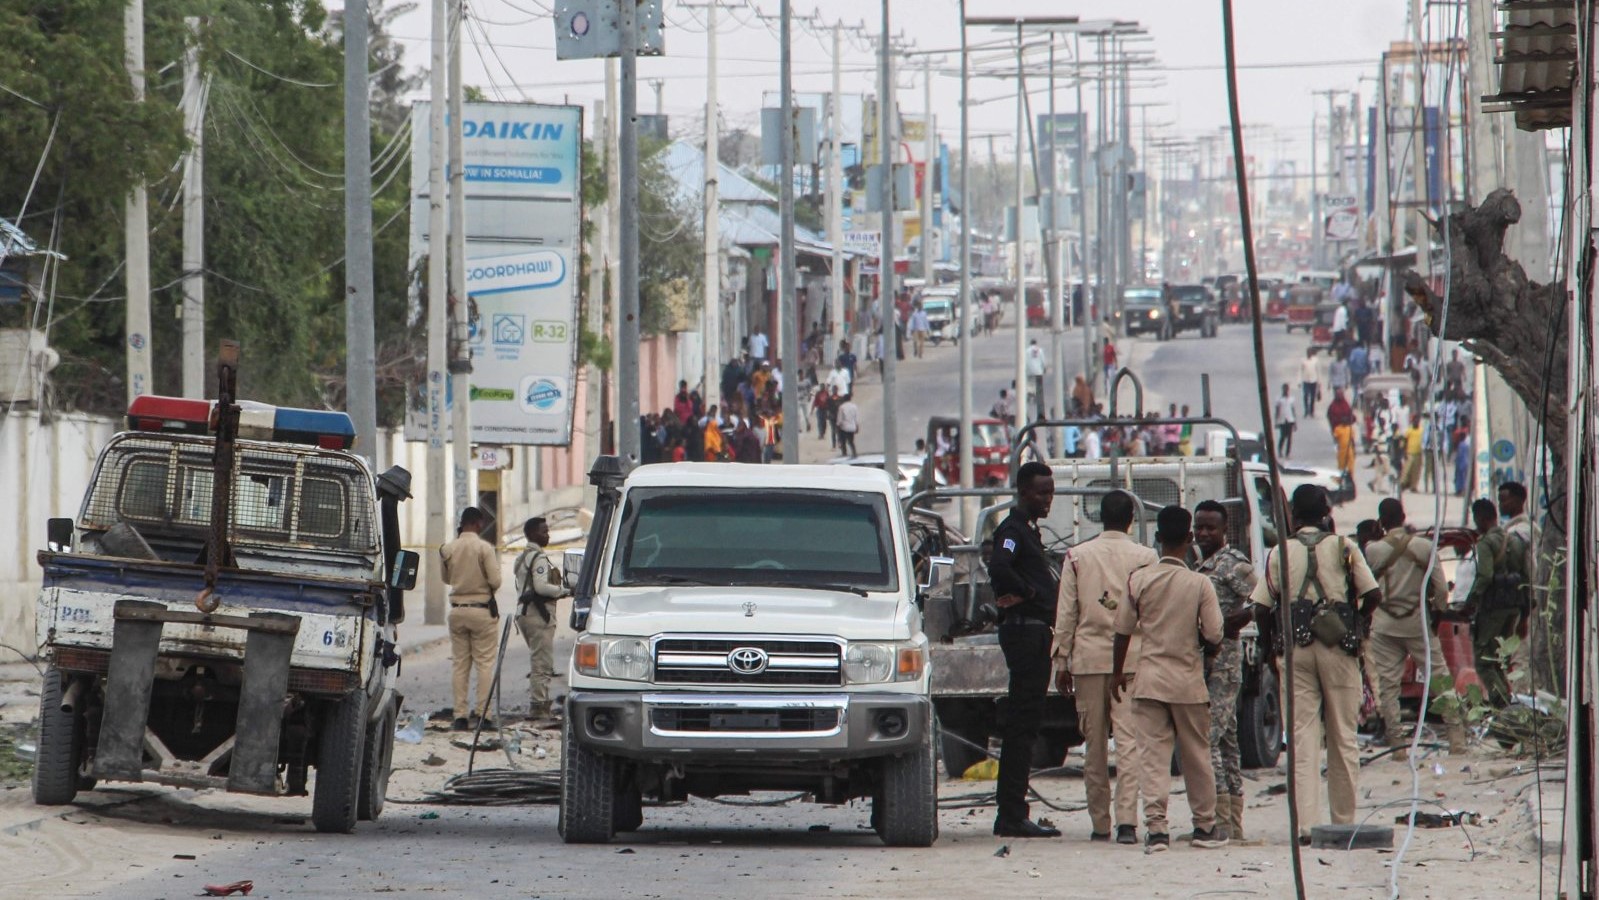 ضباط وأفراد من الشرطة يقفون في موقع انفجار قنبلة في مقديشو، الصومال، 25 نوفمبر 2021